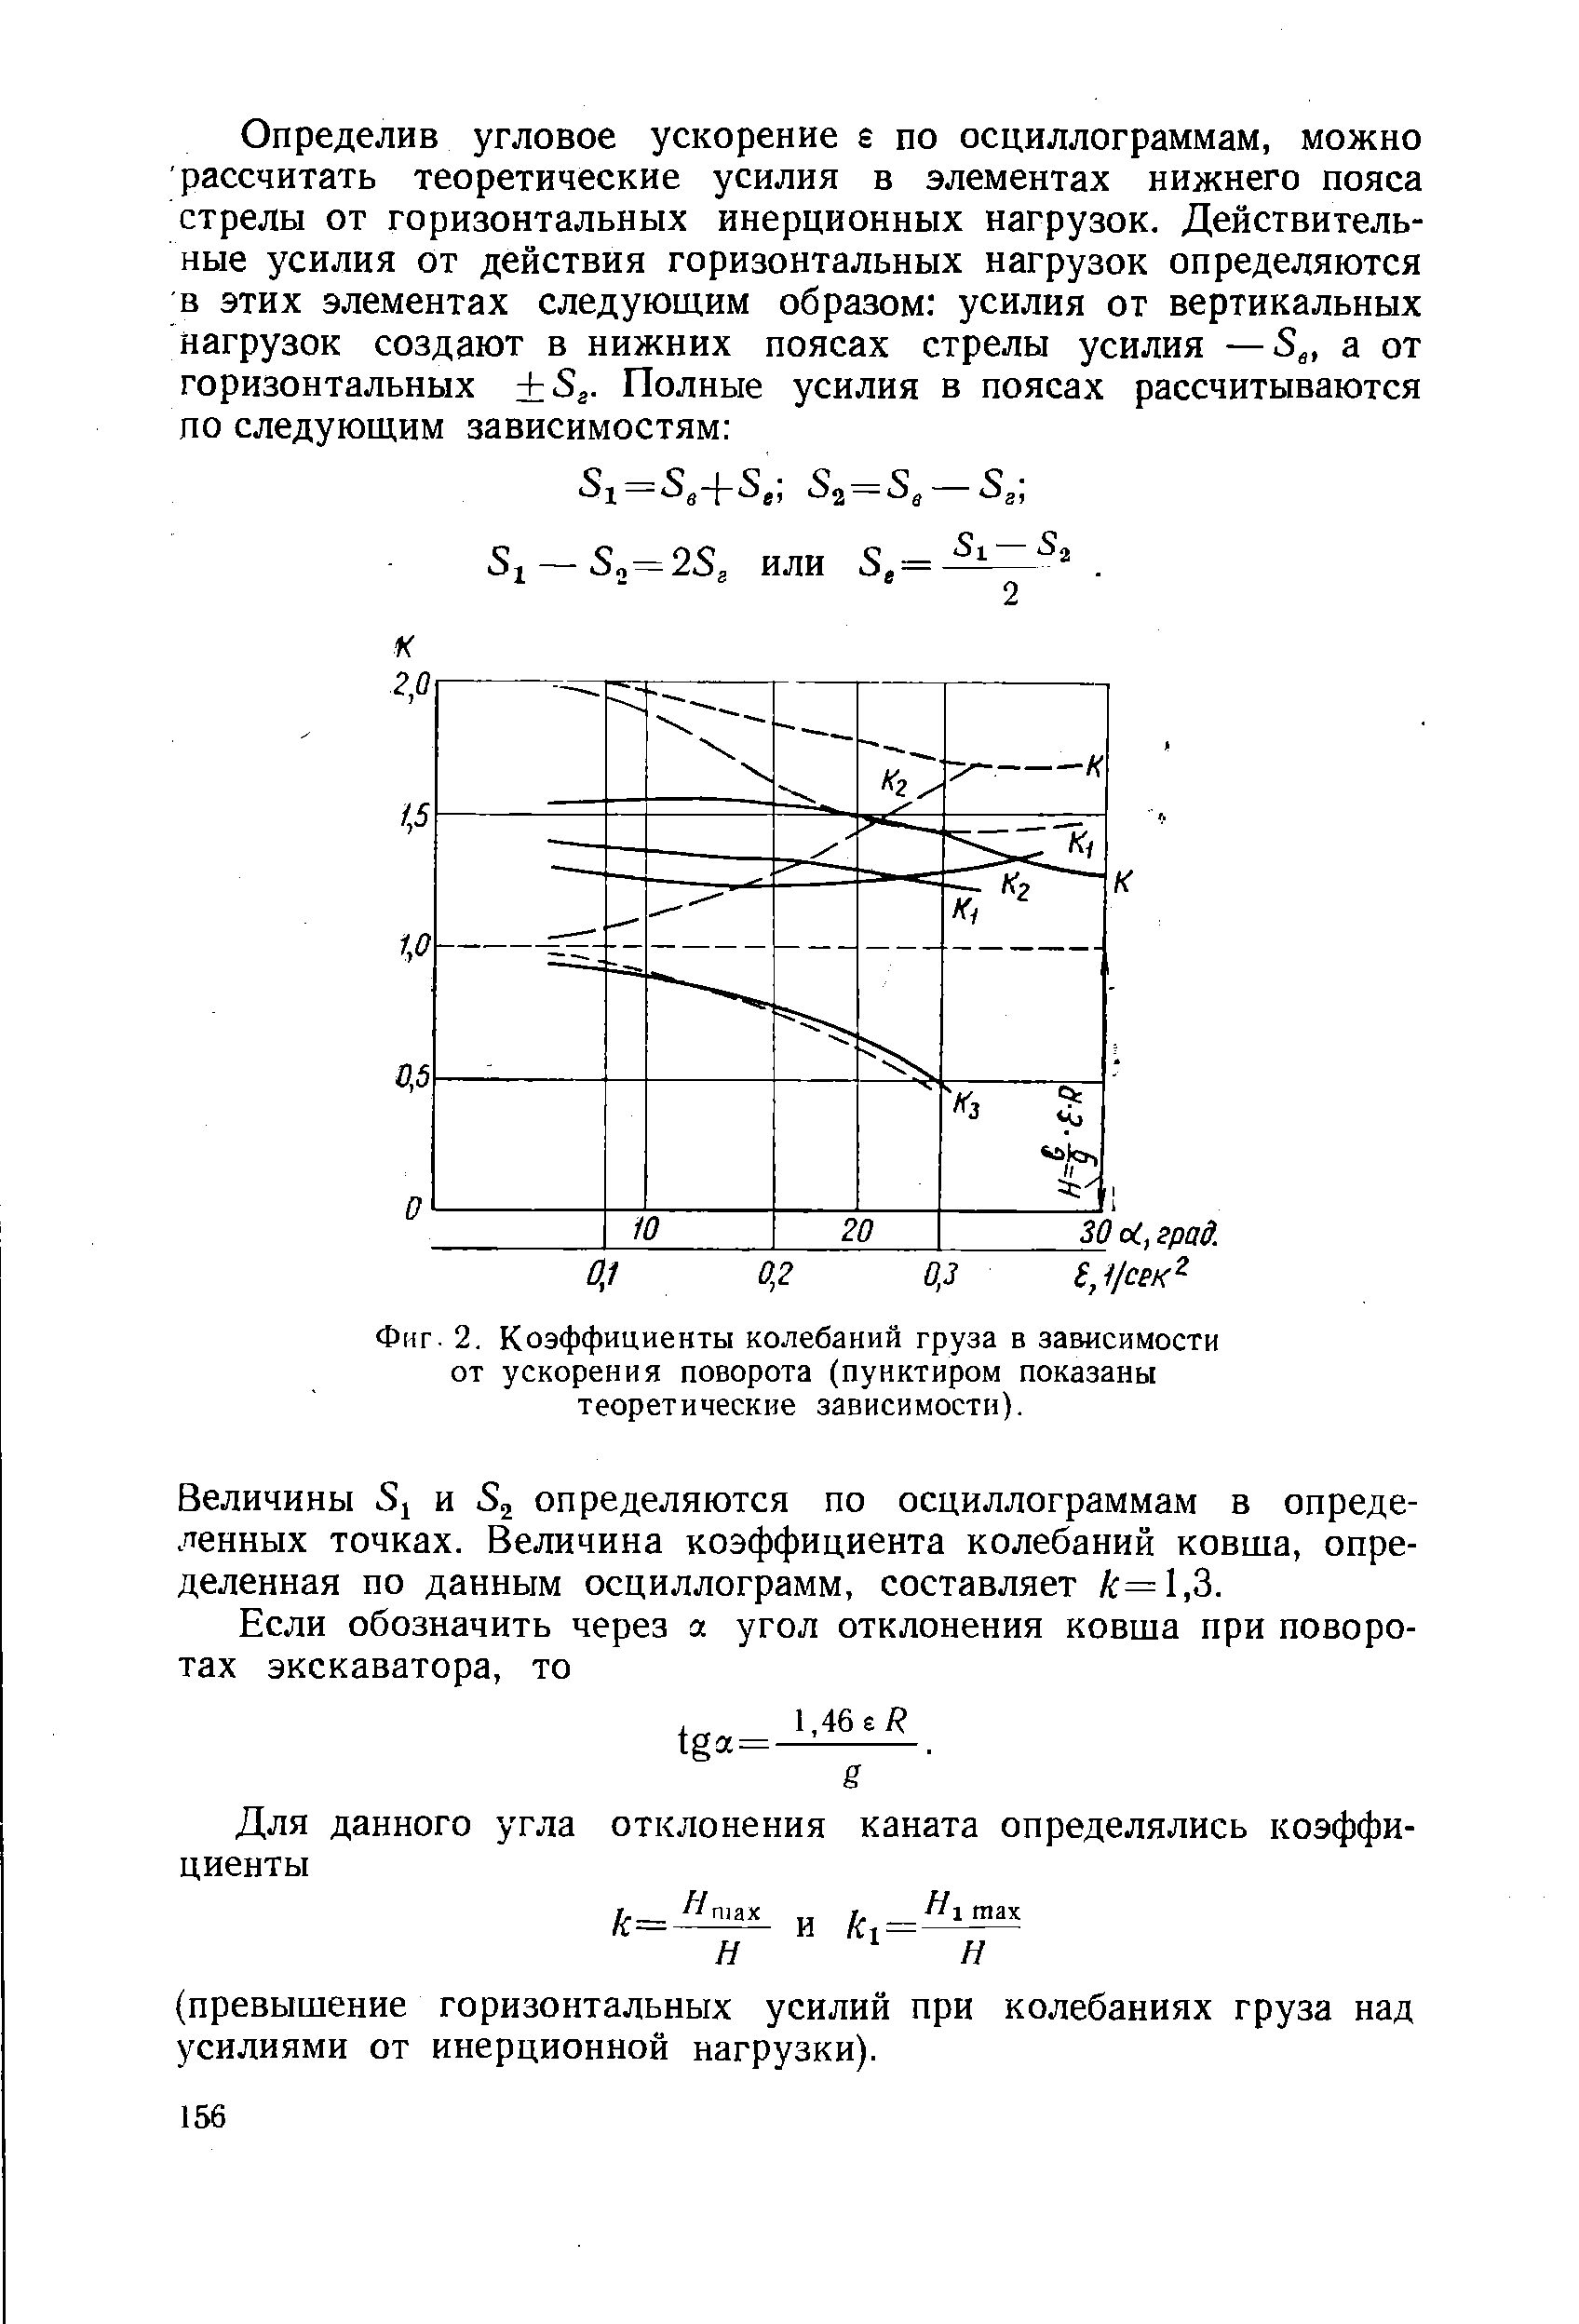 Фиг. 2. Коэффициенты колебаний груза в зависимости от ускорения поворота (пунктиром показаны теоретические зависимости).
